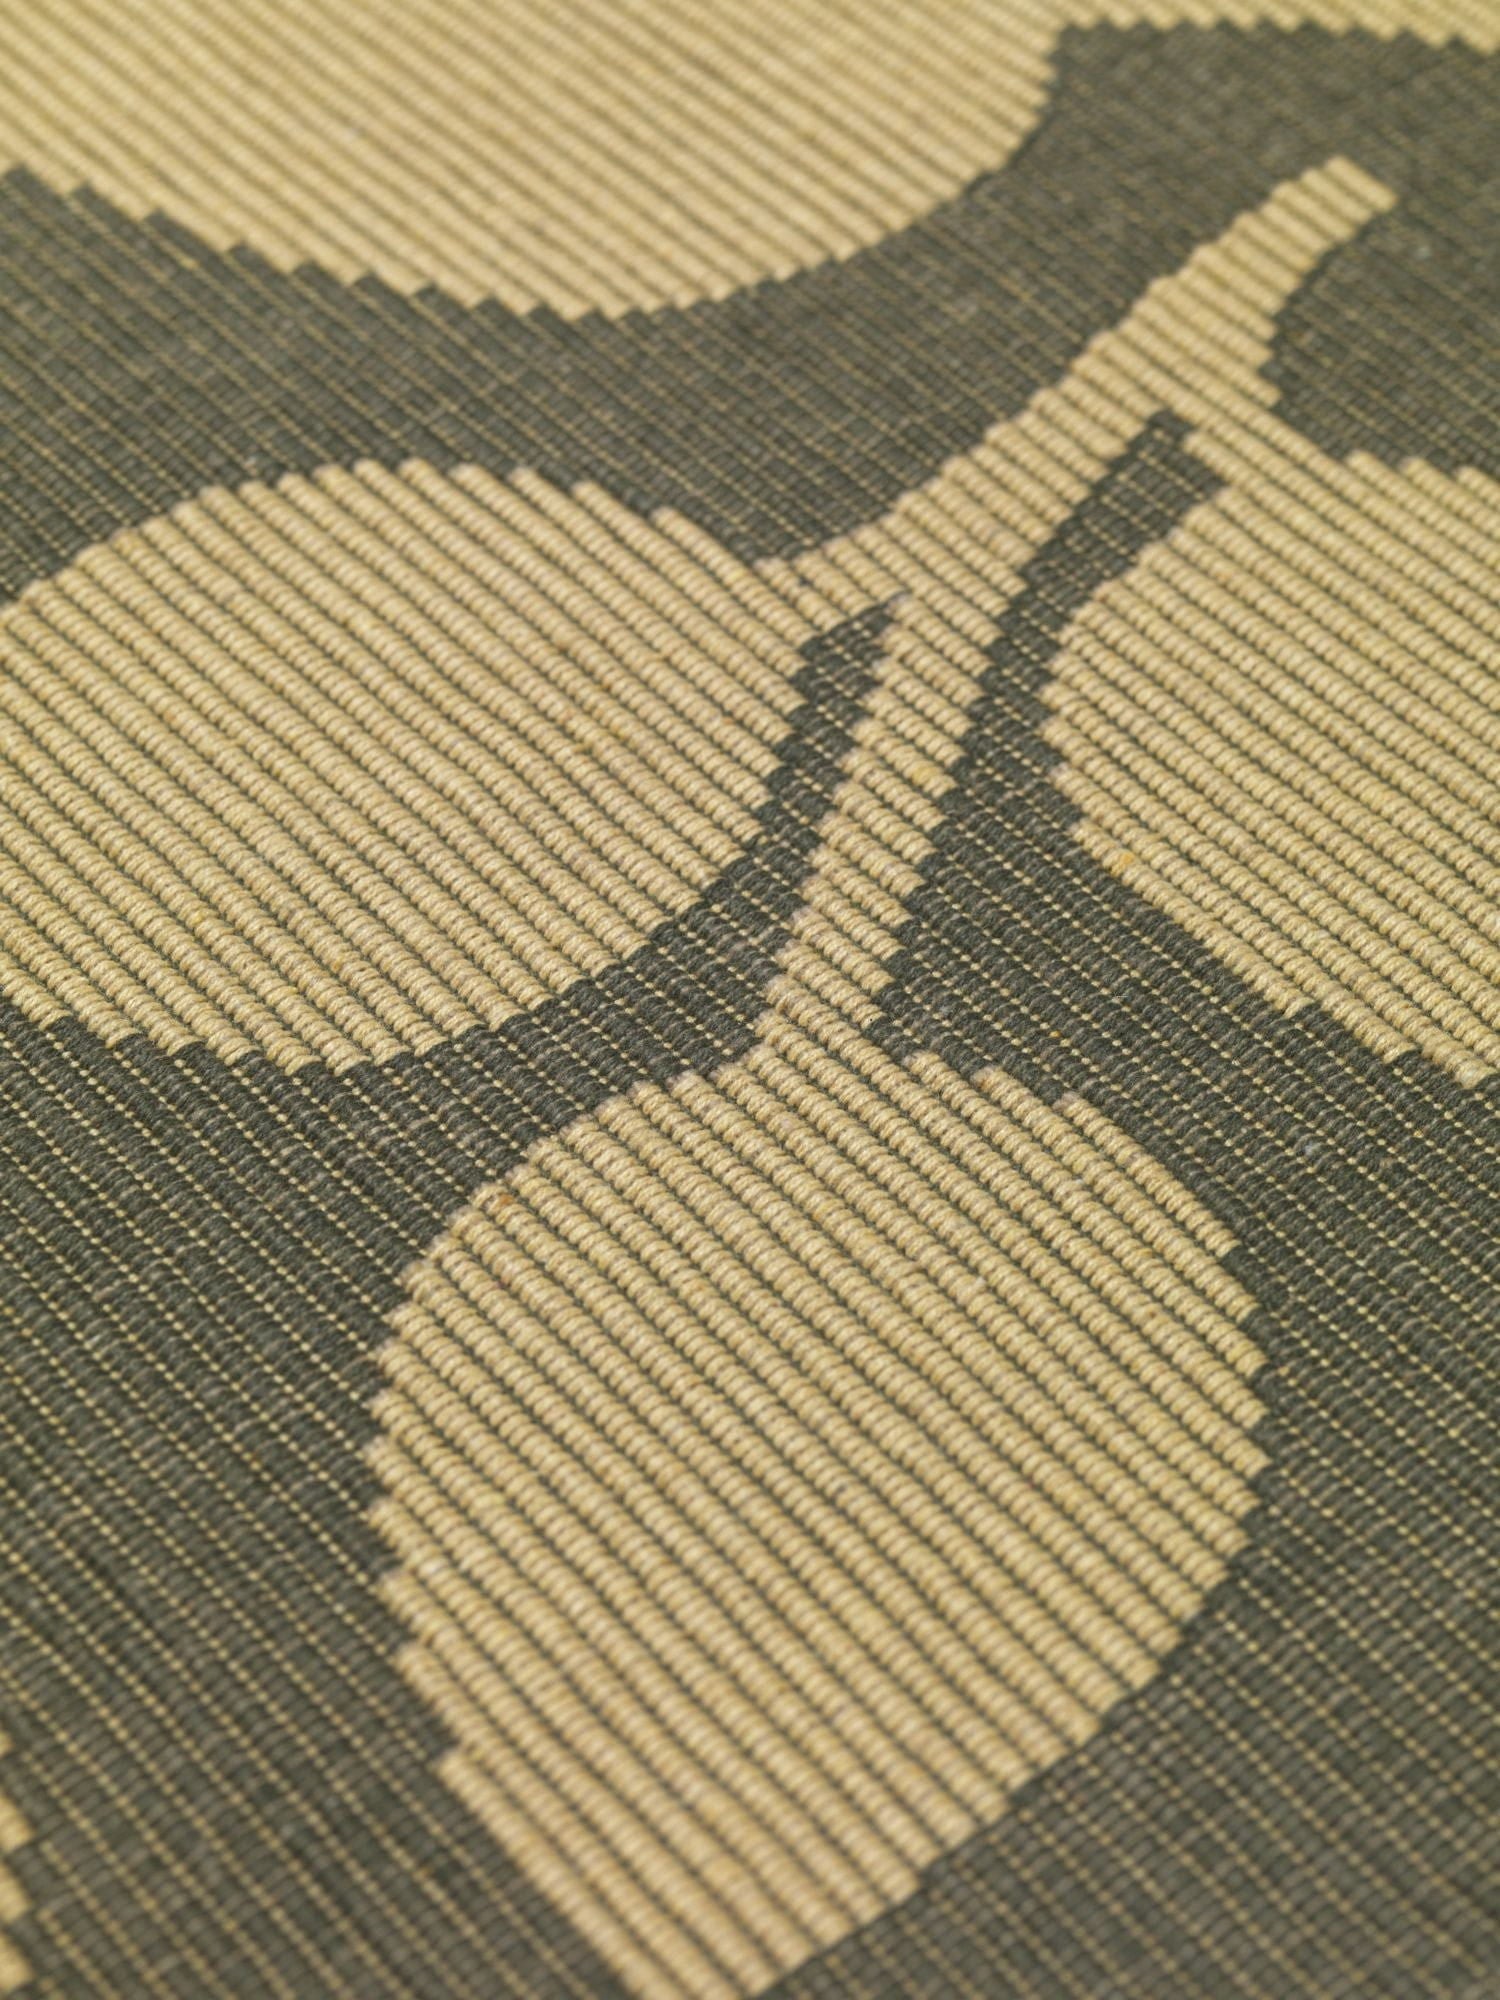 Rosendahl Rosendahl Textiel buiten natura 43x30 cm, groen